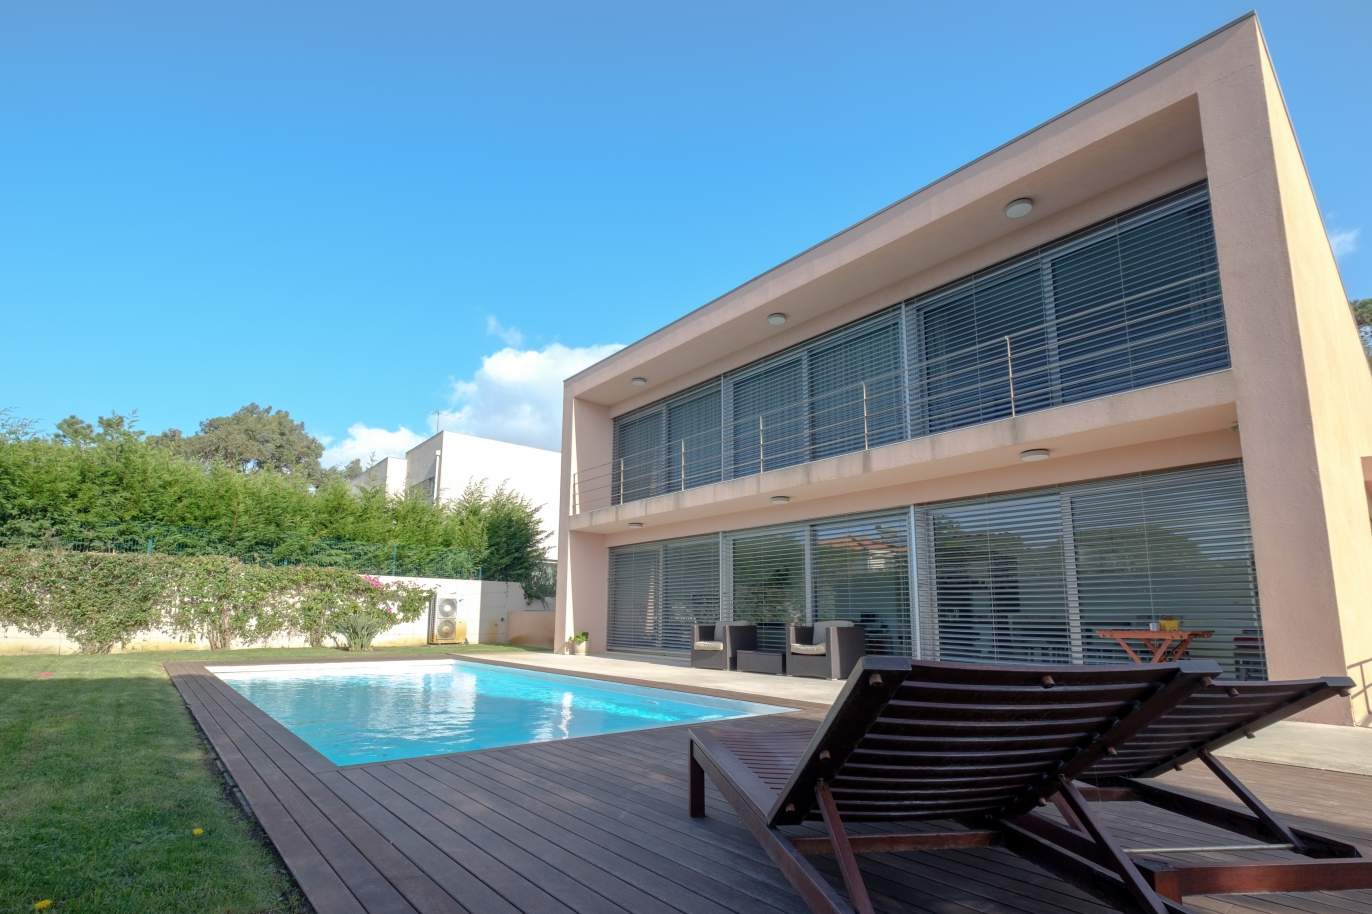 Venda moradia de luxo com jardim e piscina, Lavra, Matosinhos, Portugal_126497